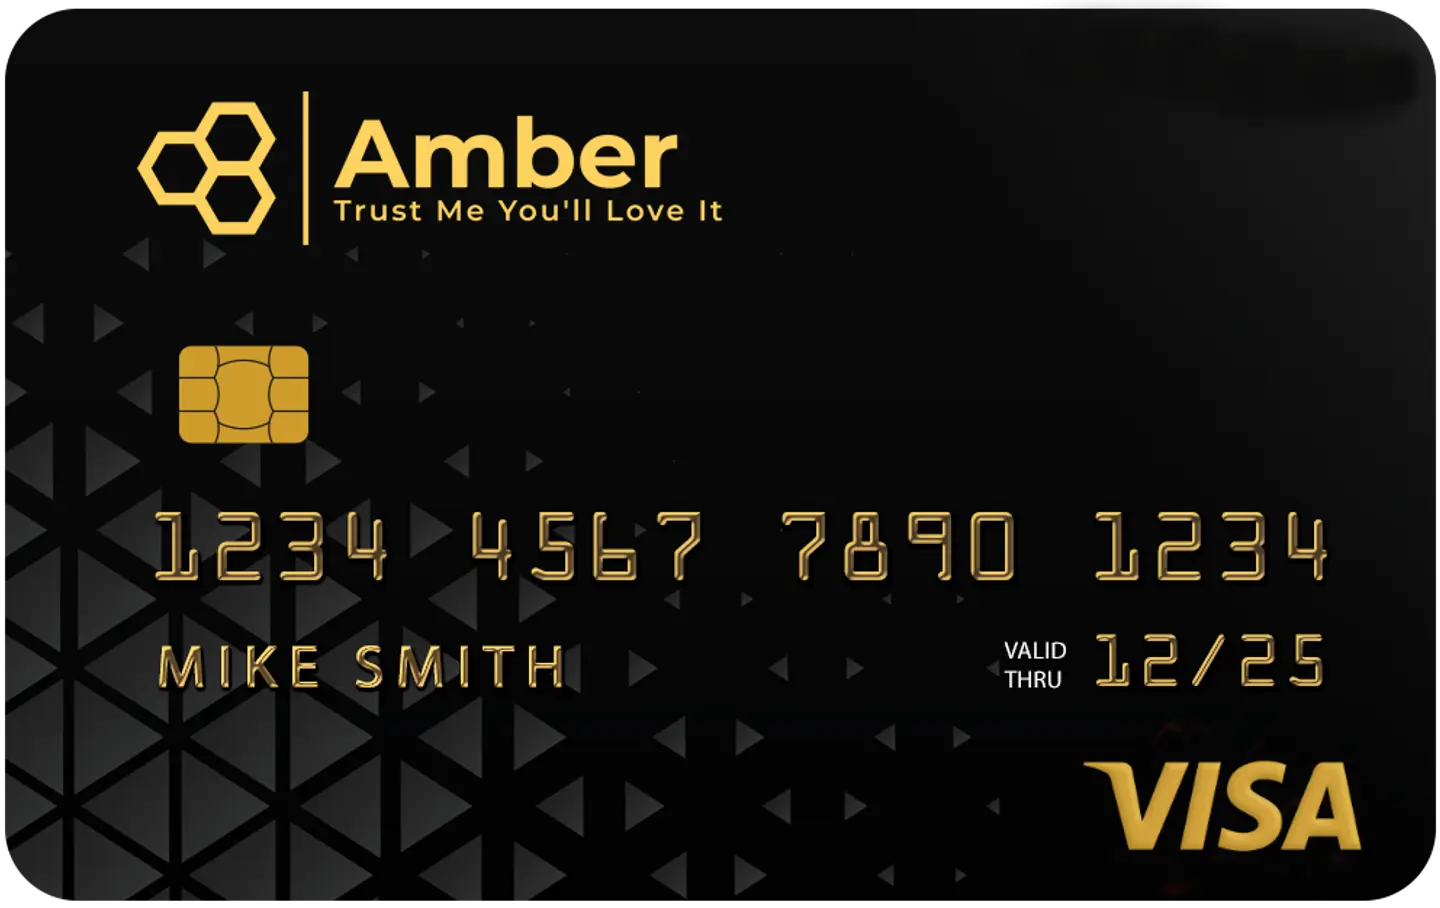 My Amber Card Executive Card